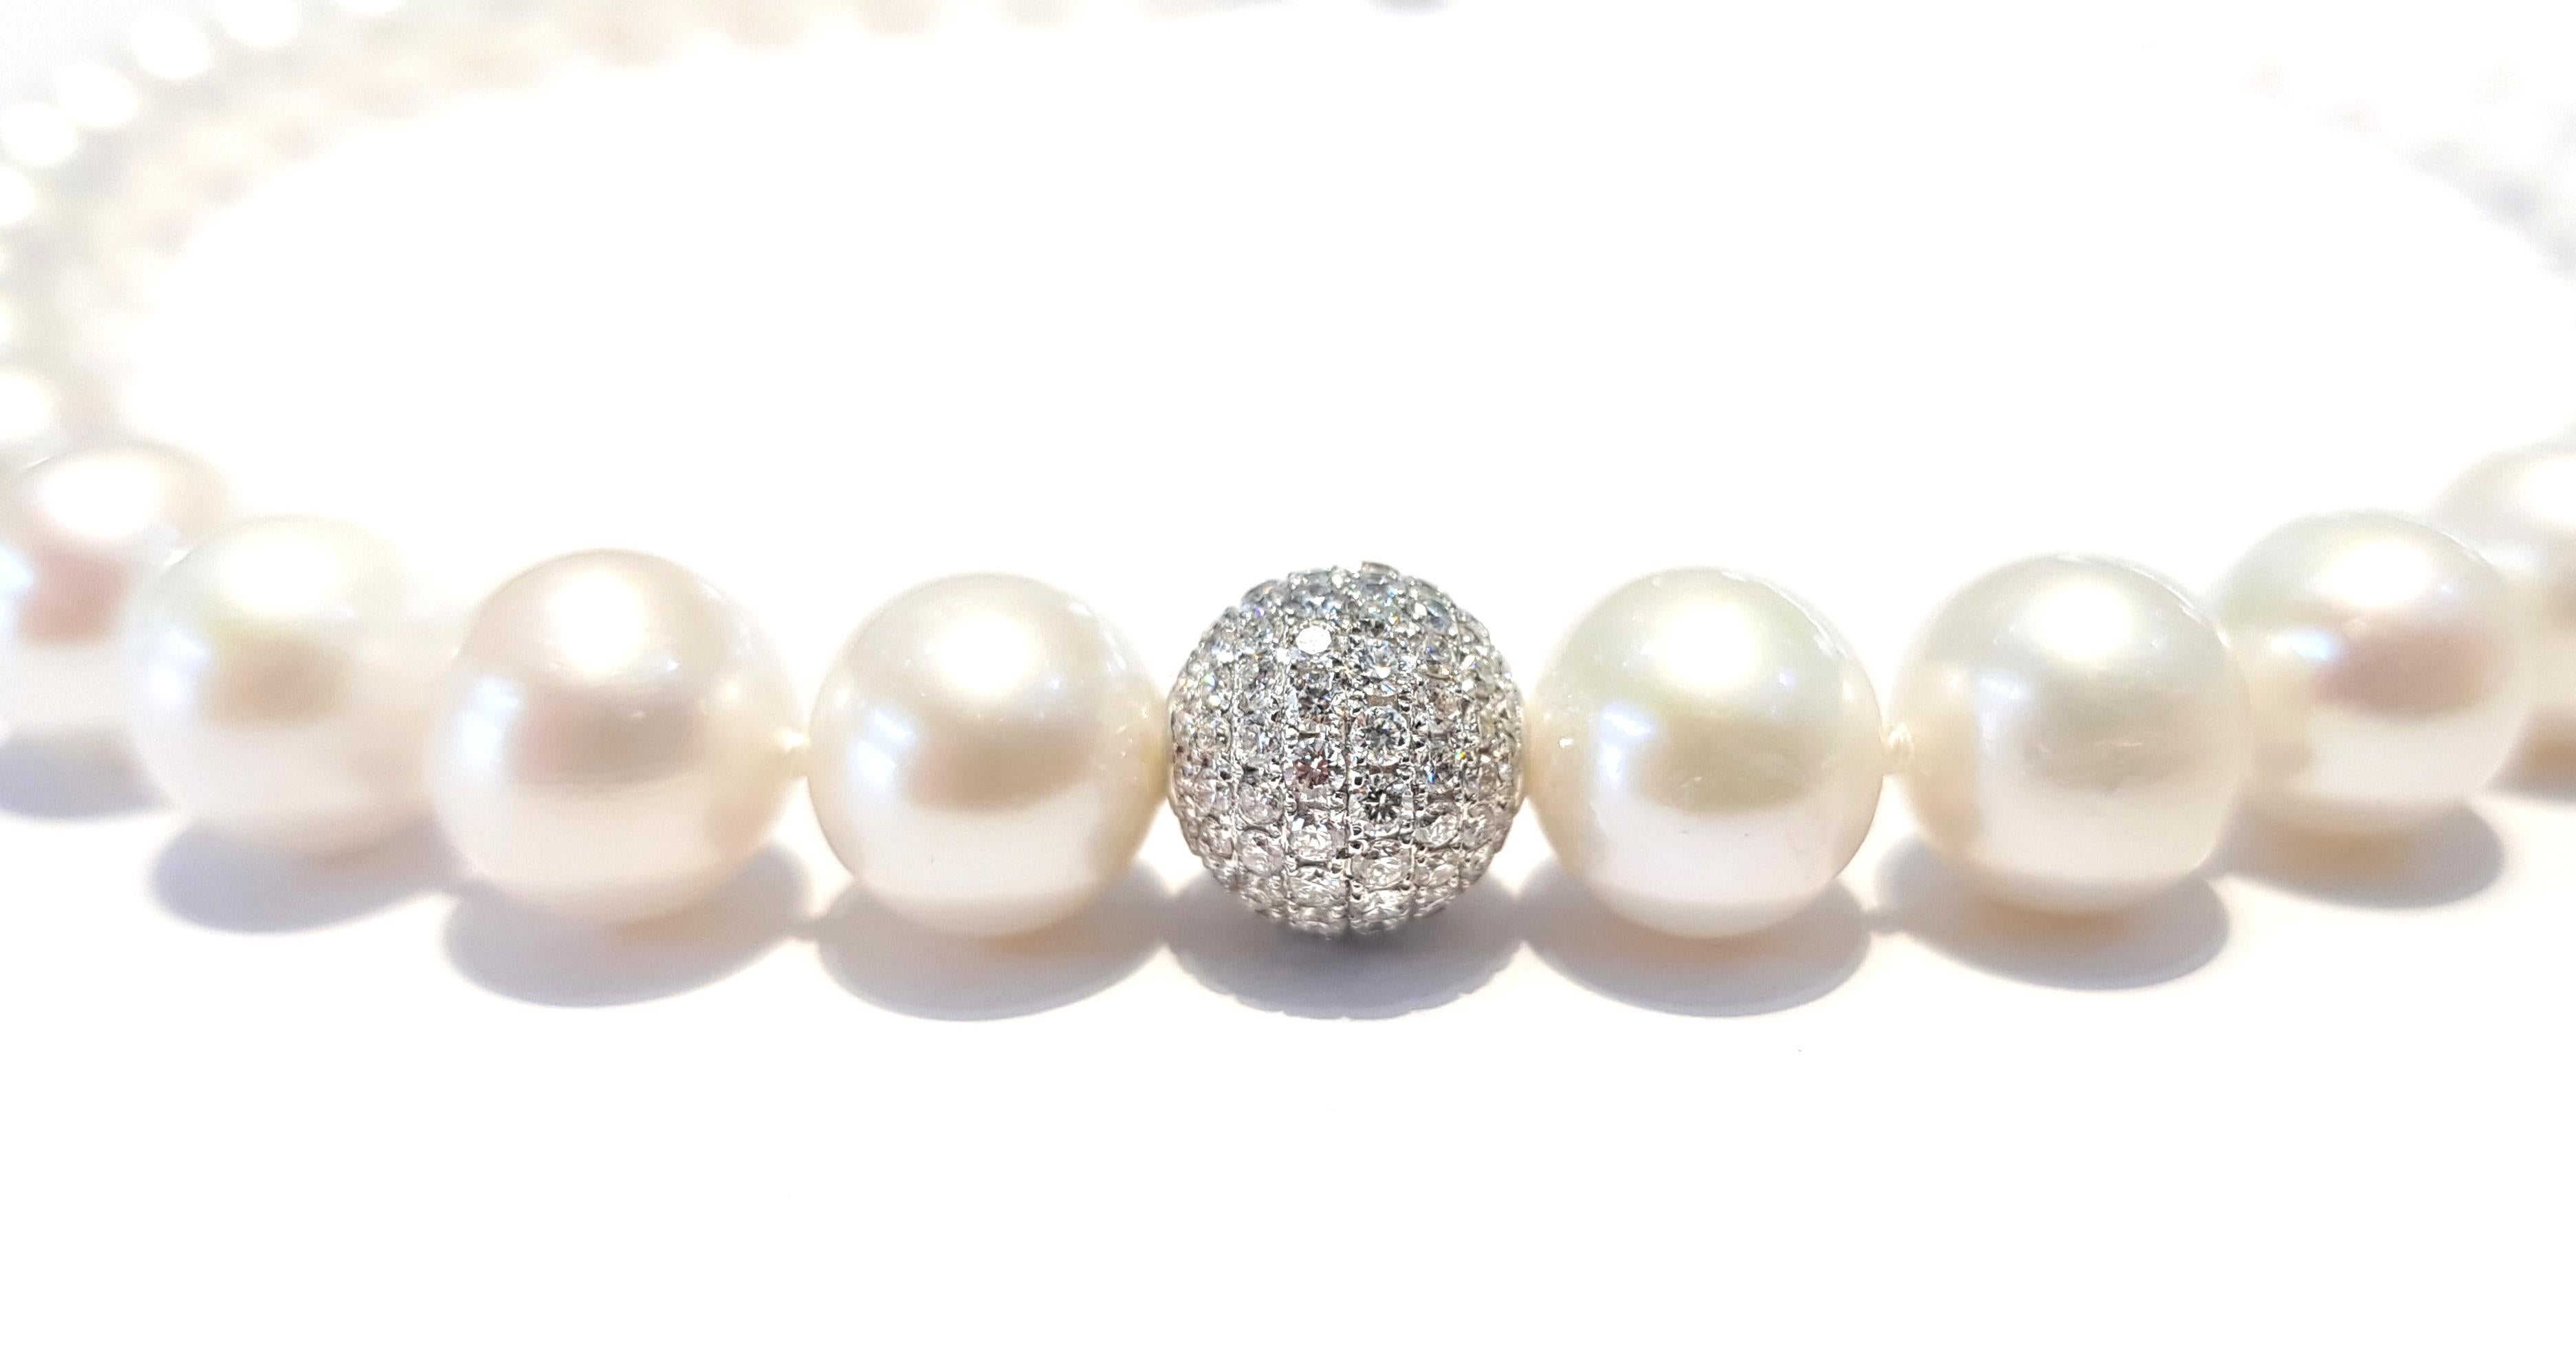 Ein reines und einfaches 16 Zoll Perlenkette in weißem Süßwasser Perlen mit einer zentralen Kugel in runder Farbe G Klarheit VS1 White Brilliant Cut Diamanten gesetzt. Ein moderner Akzent in einem ansonsten traditionellen Look.  Britische Punzierung